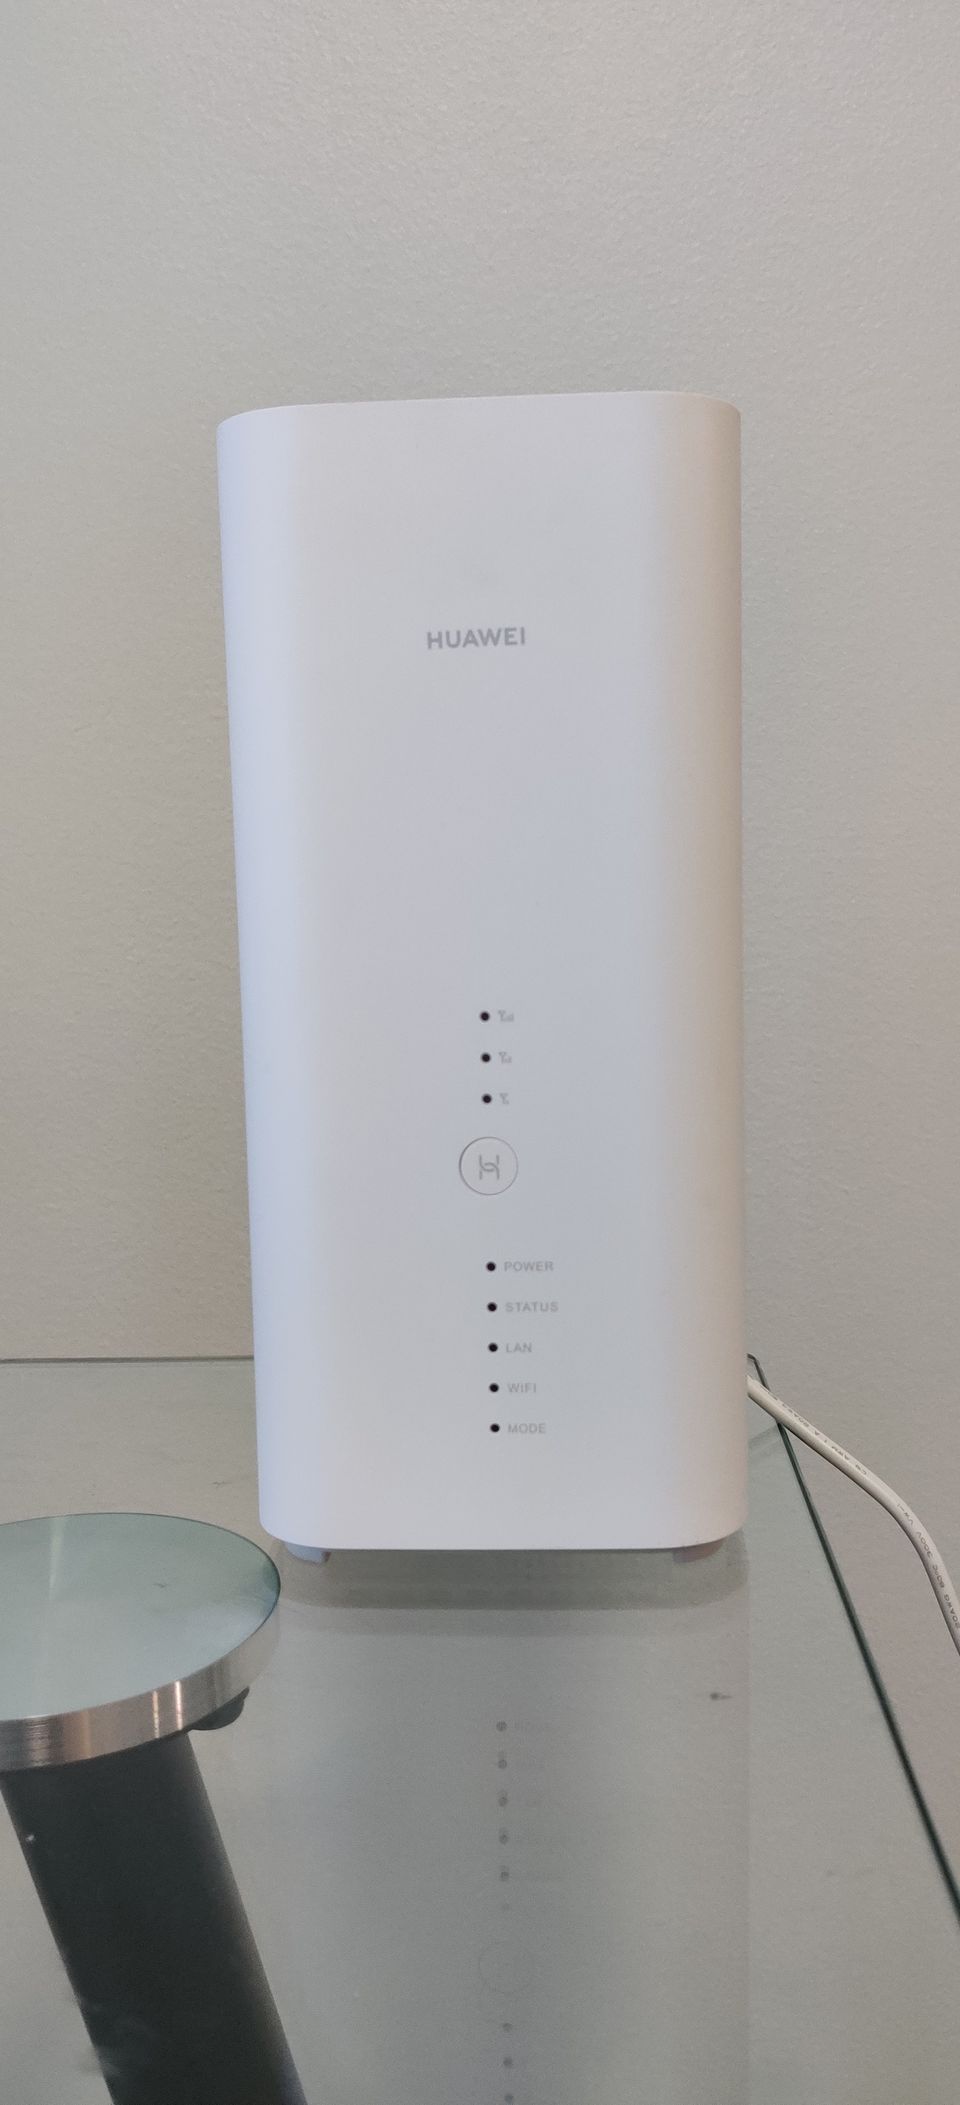 HUAWEI wi-fi router